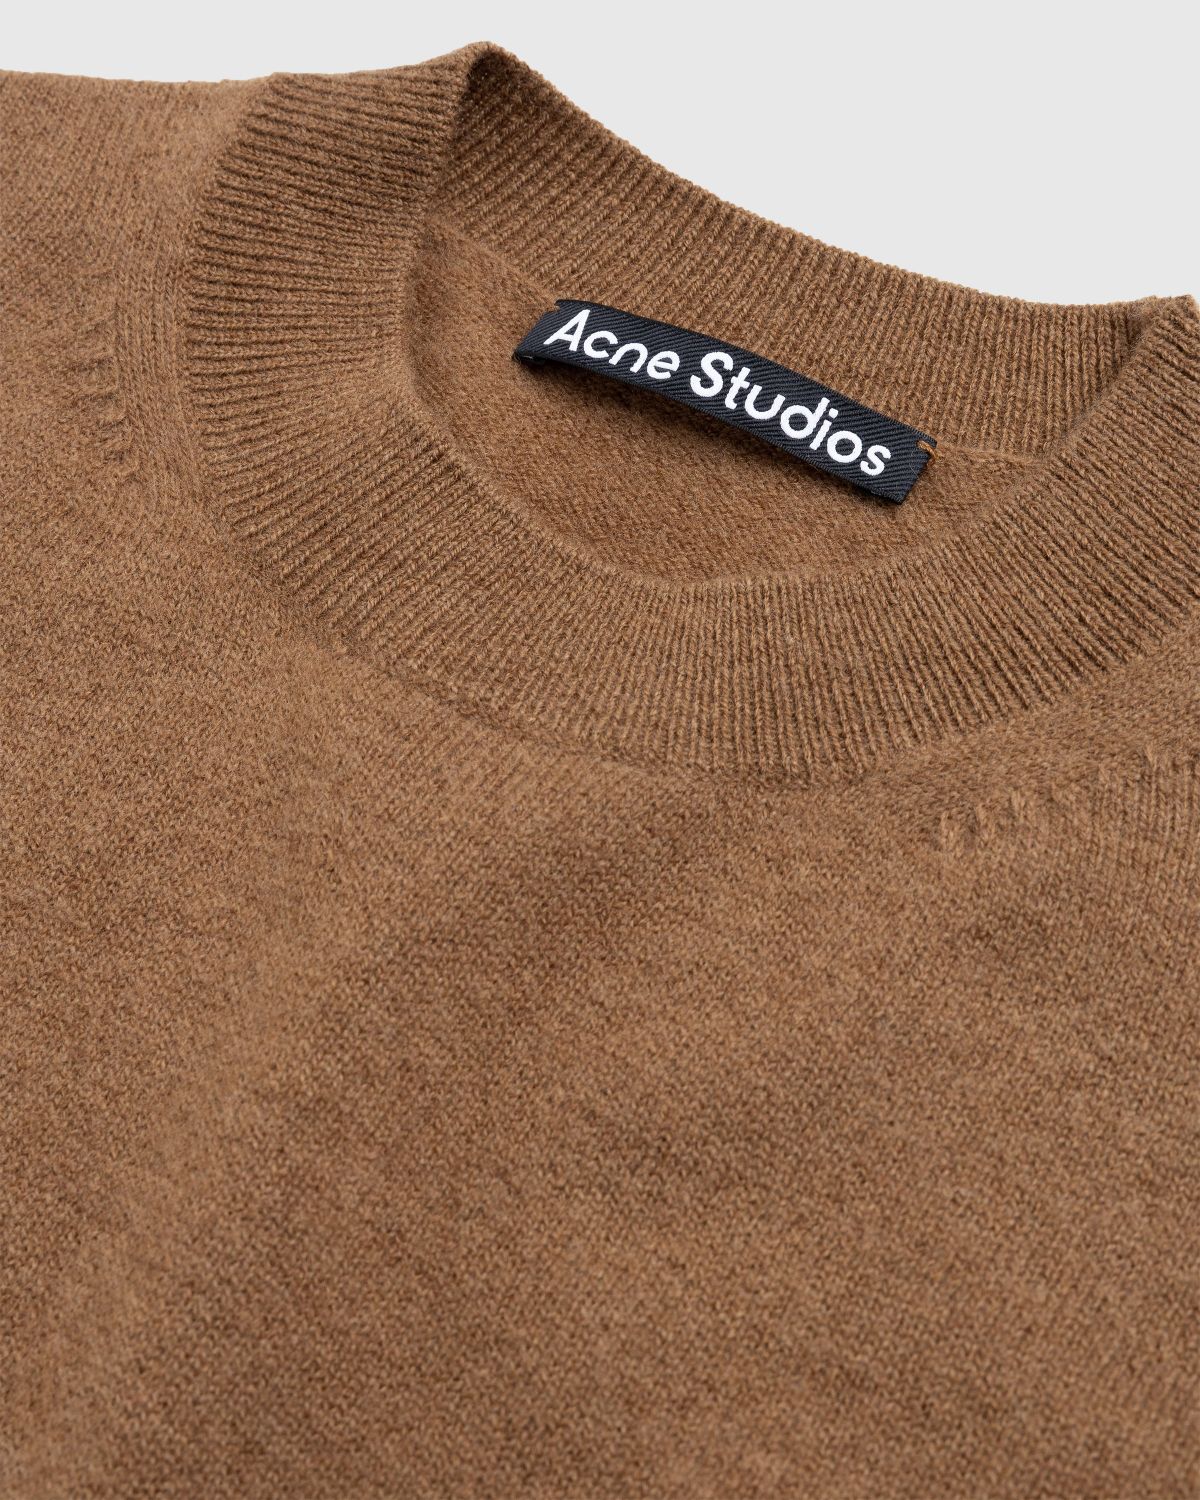 Acne Studios – Wool Crewneck Sweater Toffee Brown - Knitwear - Brown - Image 5